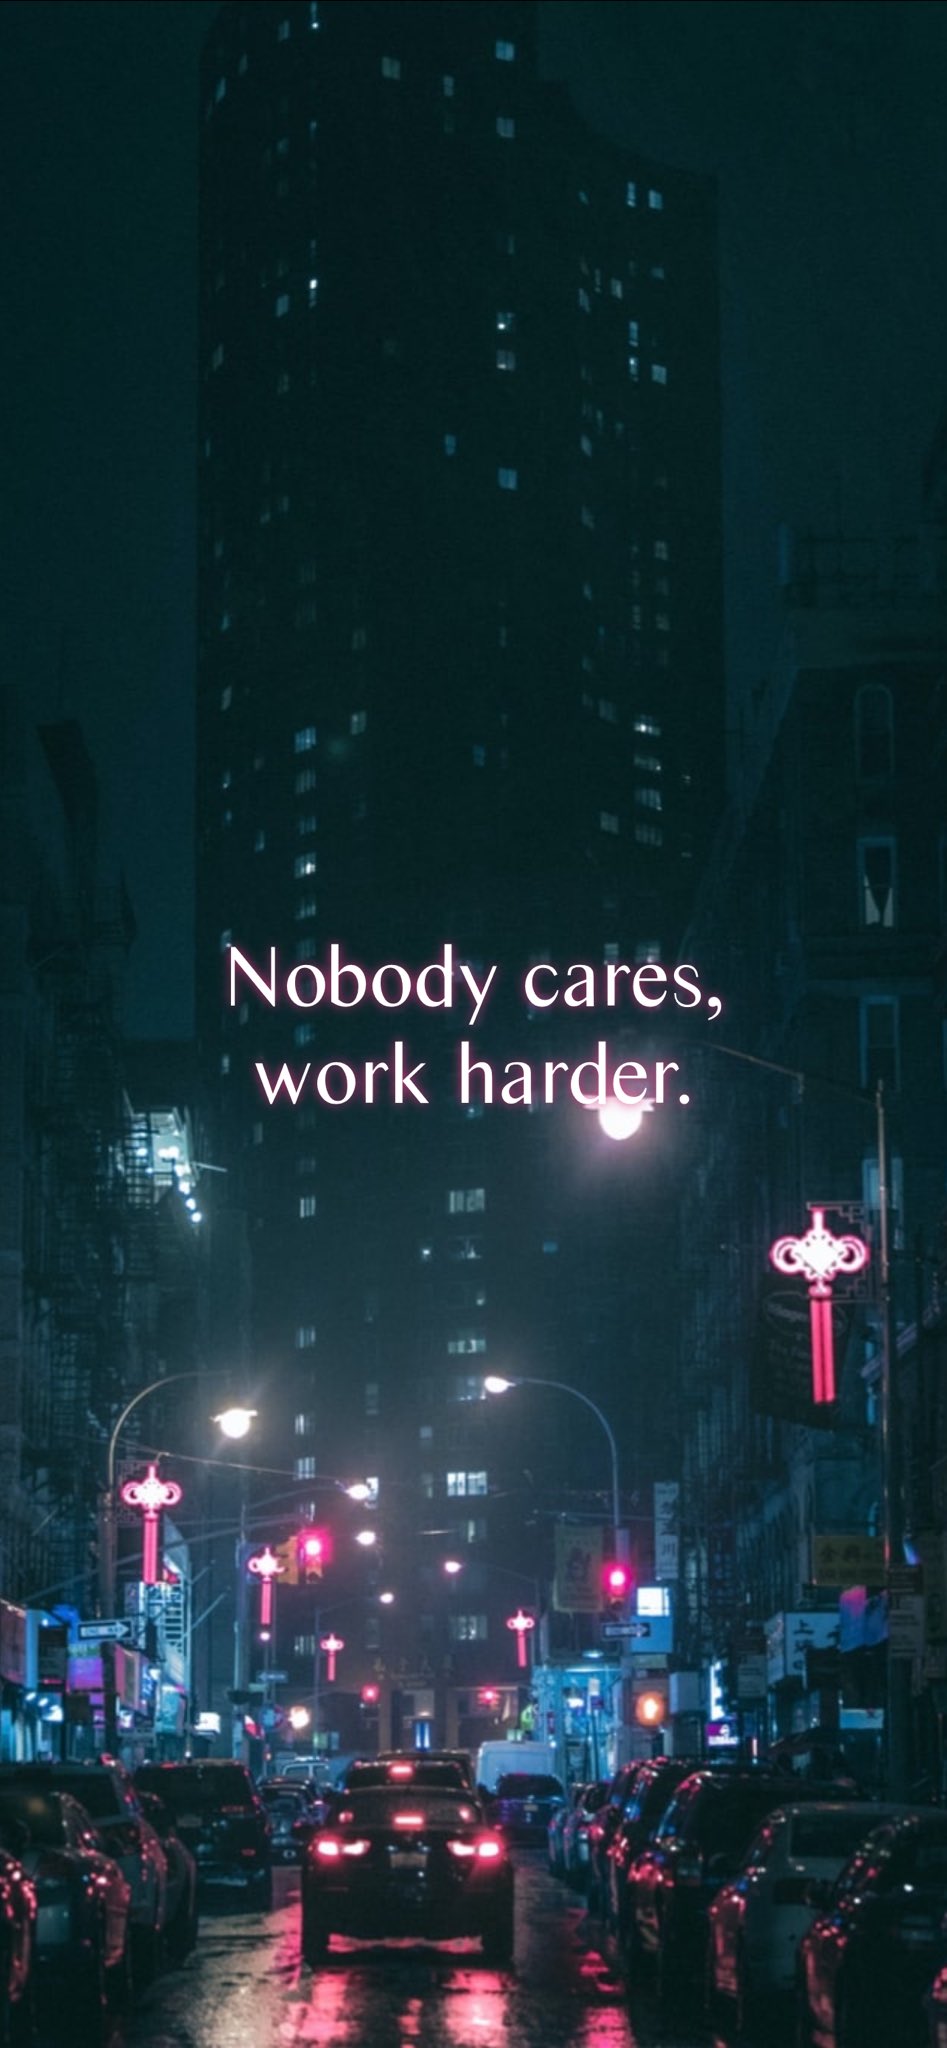 Jerome Hardaway cares, work harder. #motivation #quote #motivationalquote